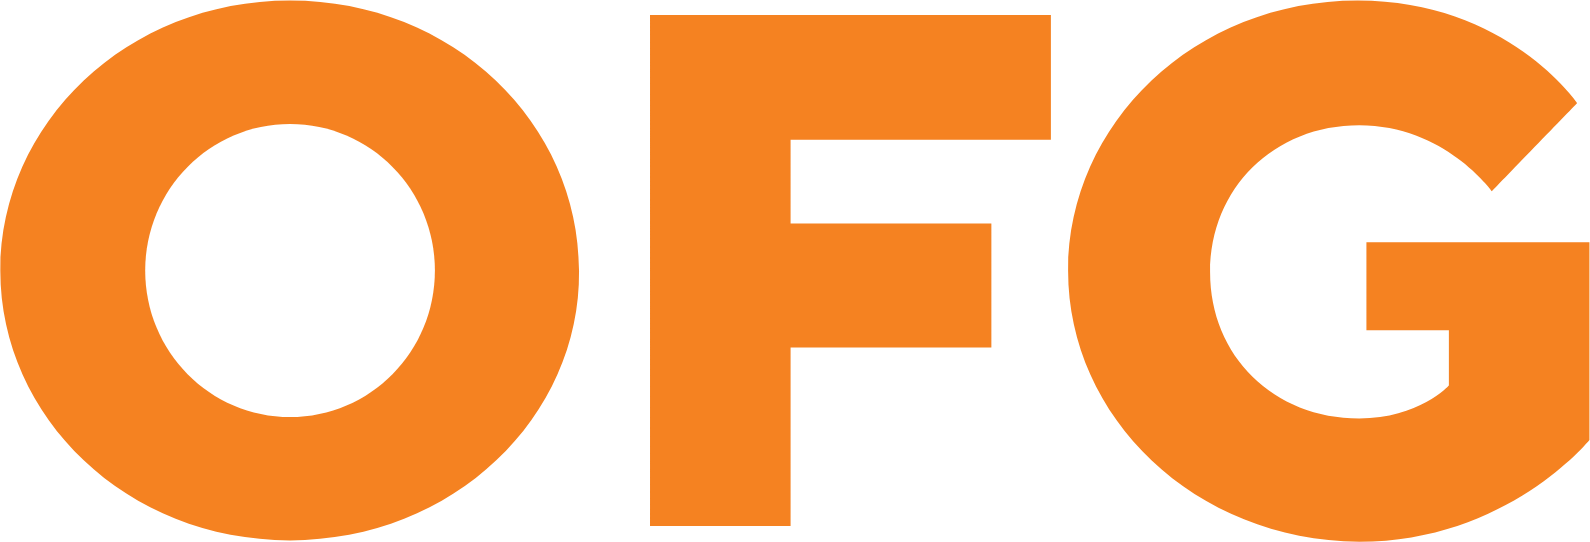 OFG Bancorp Logo